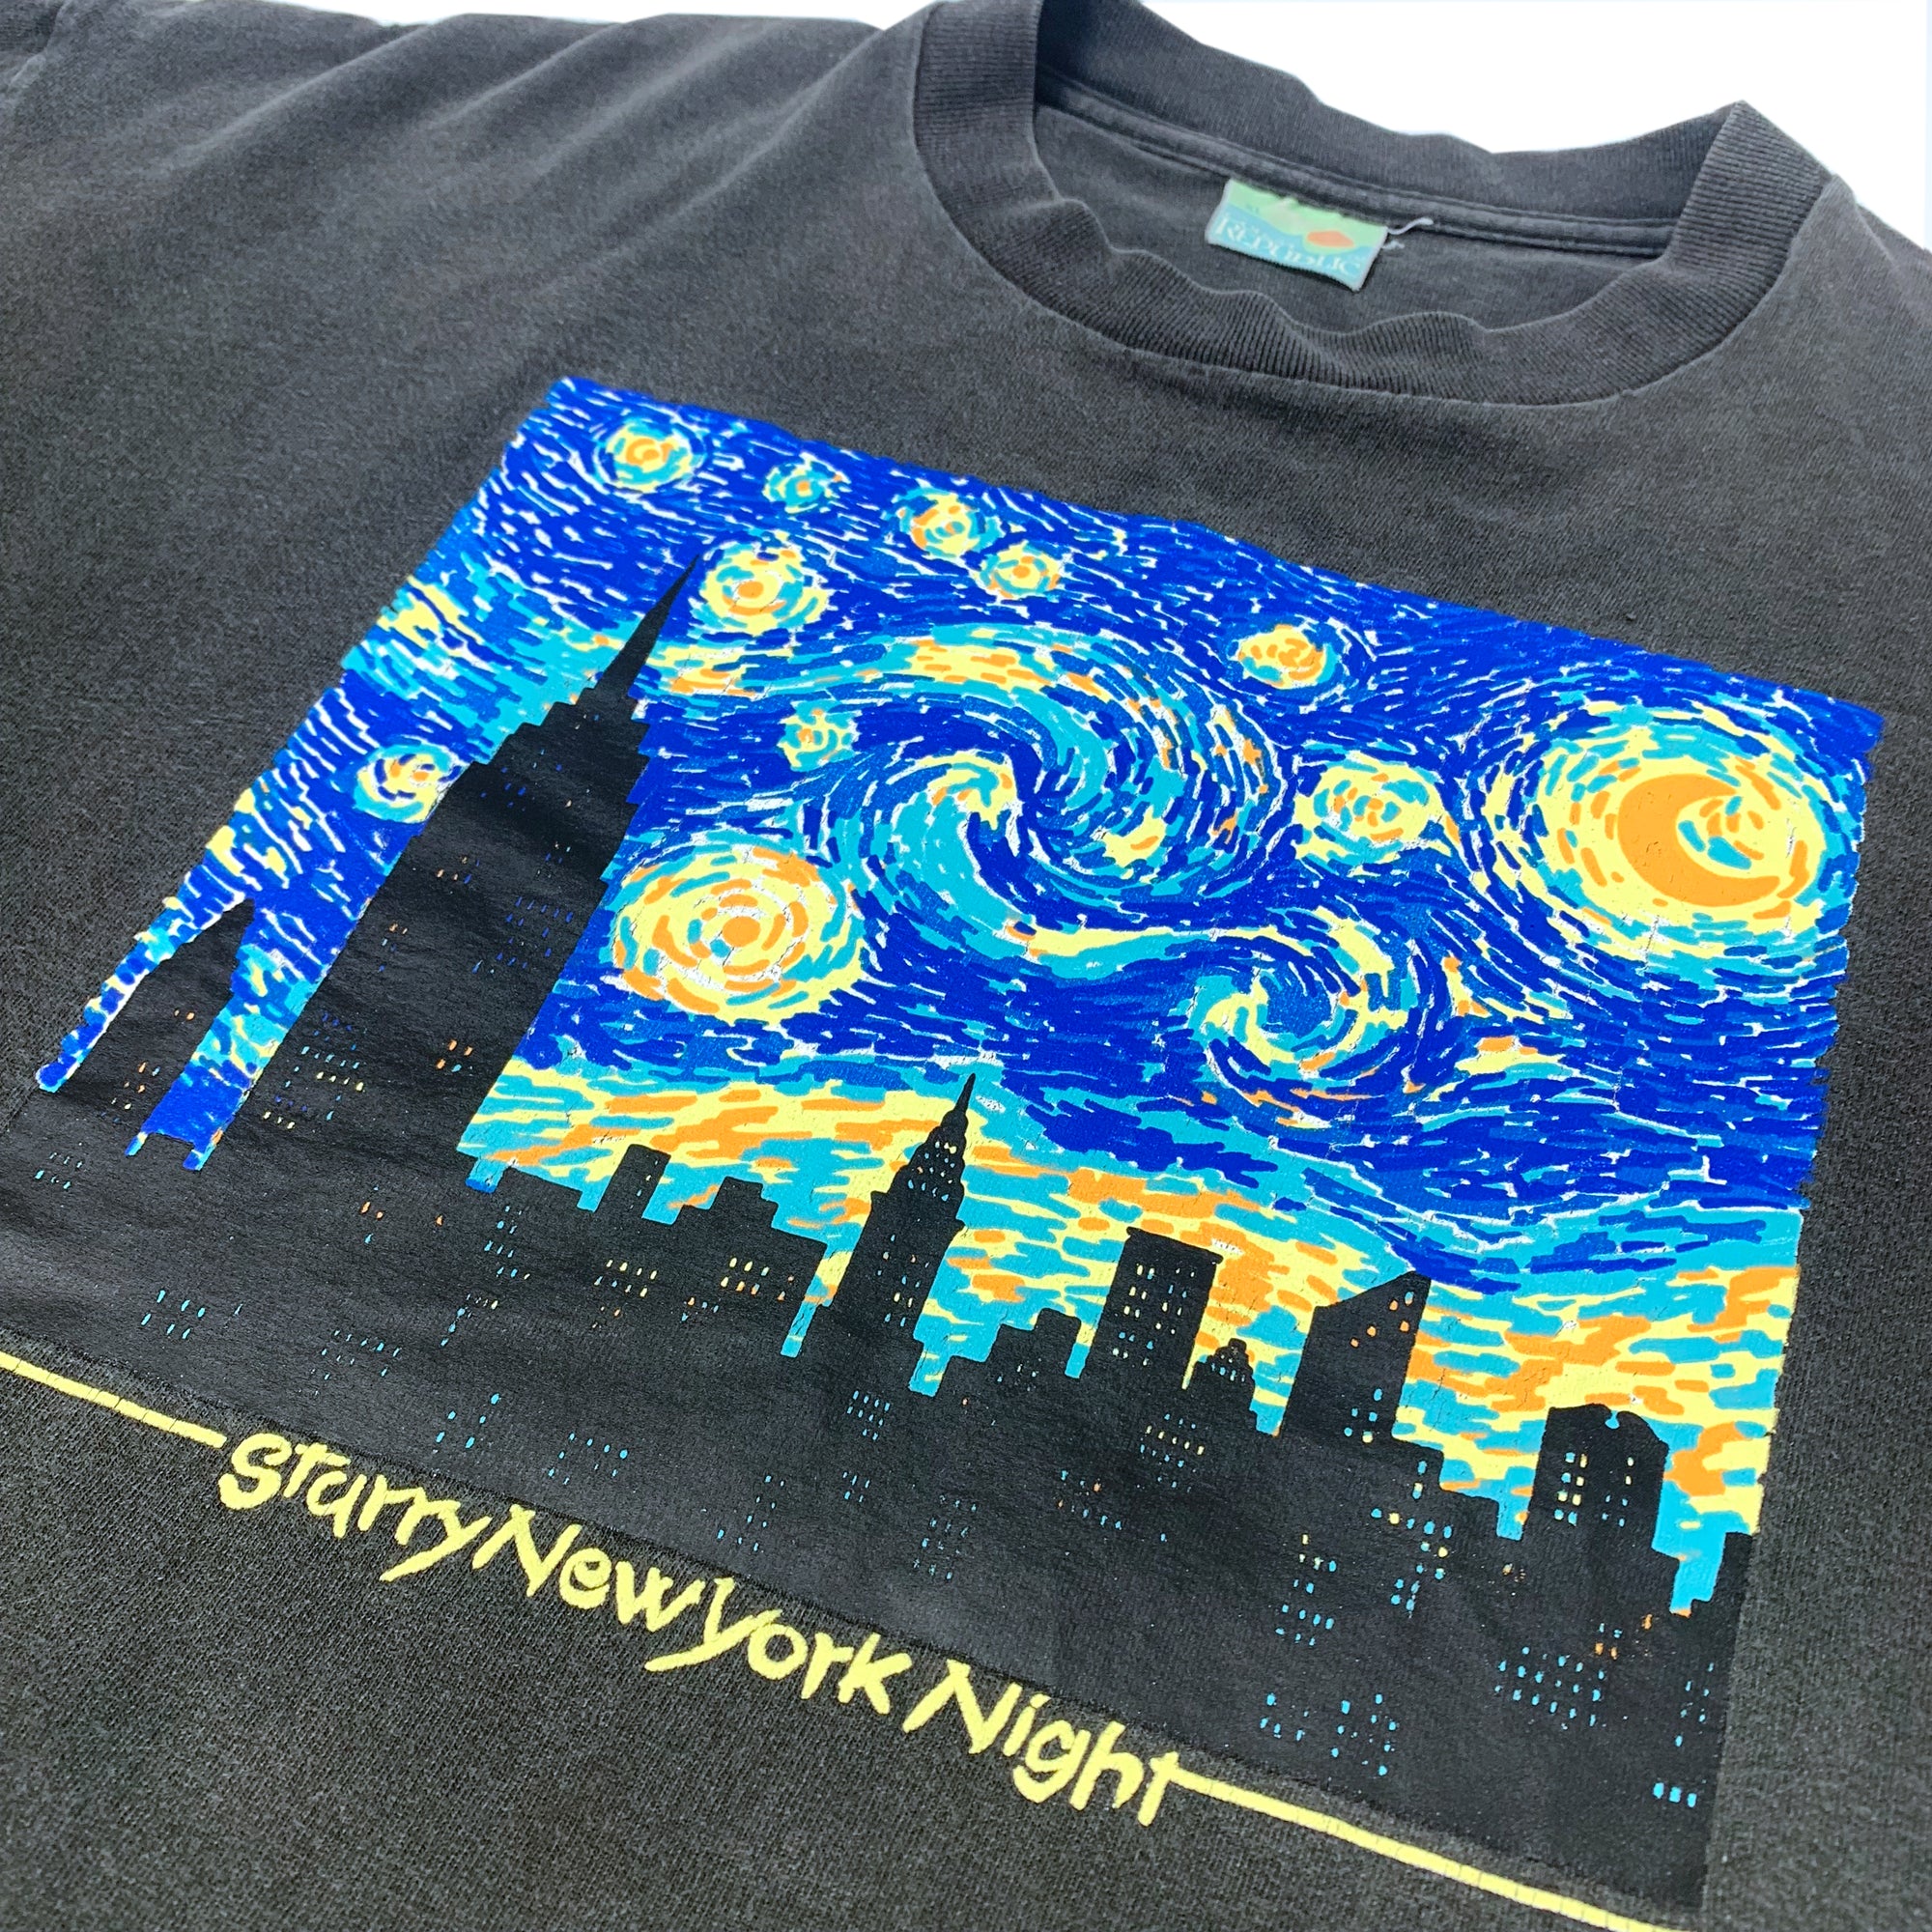 starry night t shirt india